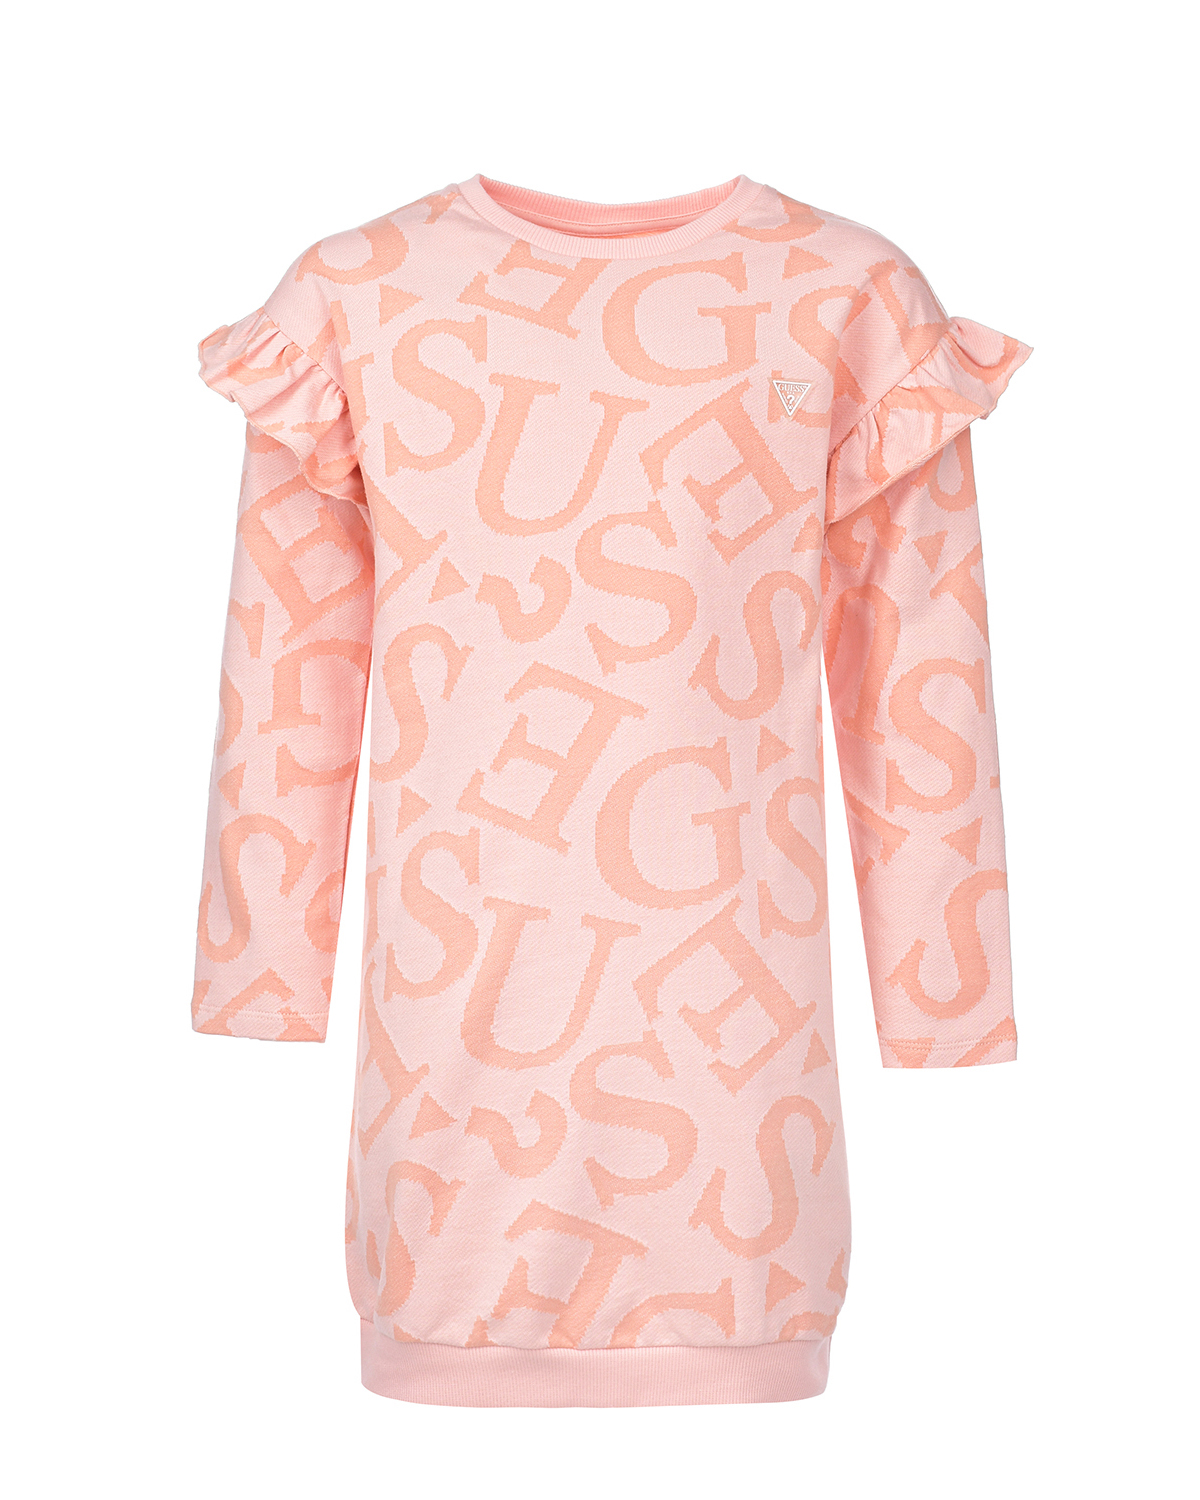 Платье со сплошным лого Guess детское, размер 122, цвет оранжевый - фото 1